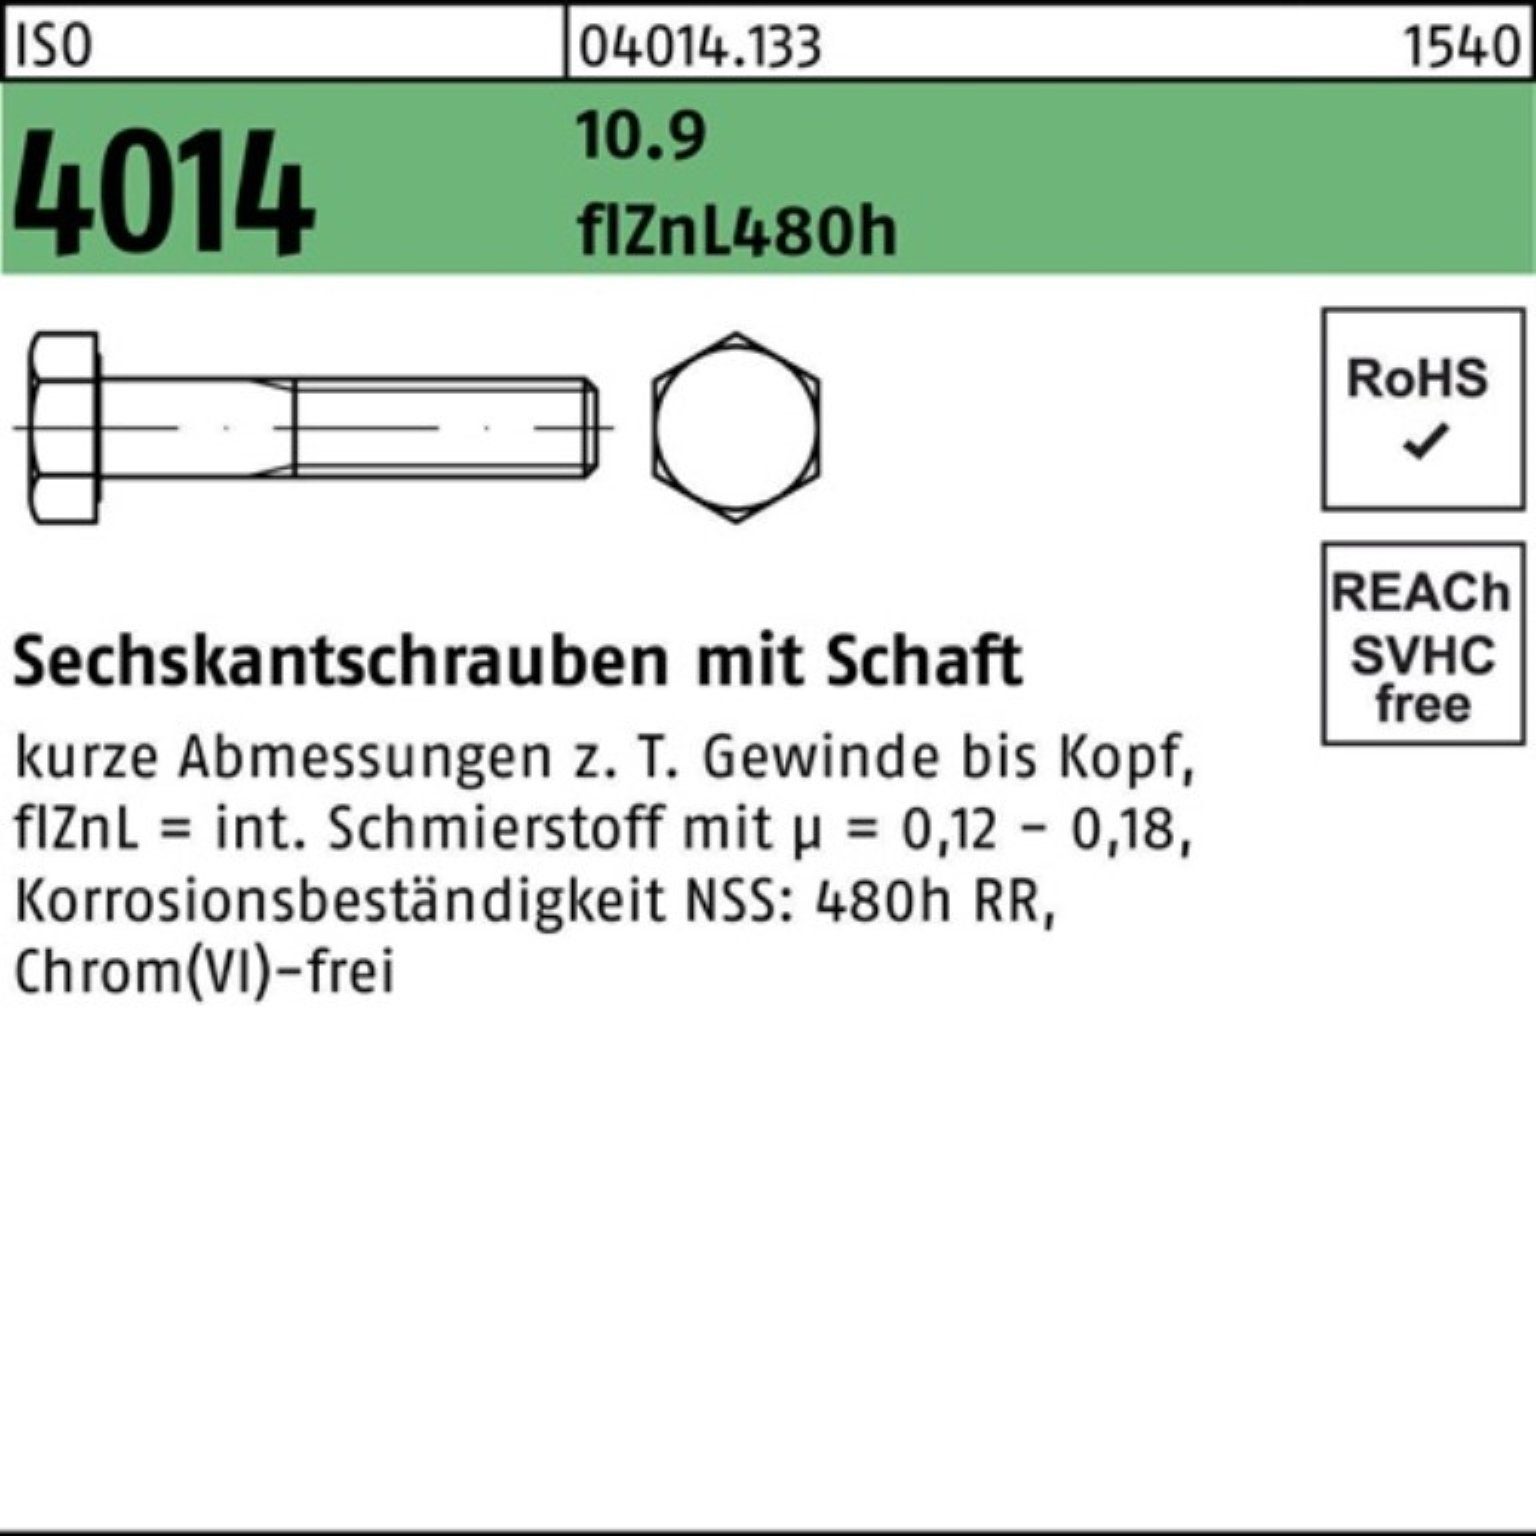 Bufab Sechskantschraube 100er Pack Sechskantschraube 170 Schaft M12x 4014 10.9 zinklamelle ISO